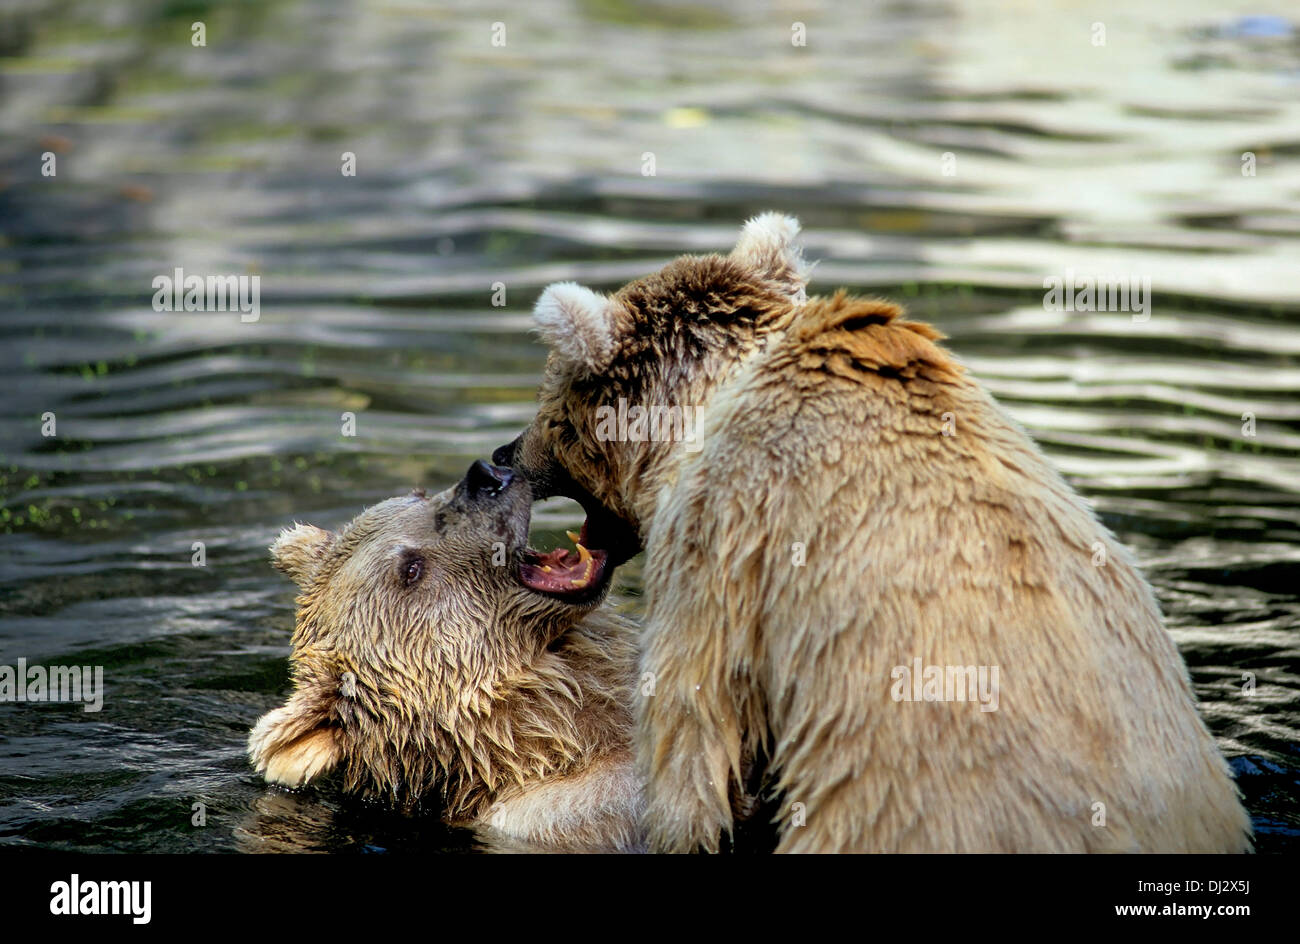 Syrian brown bear (Ursus arctos syriacus) struggling in the water, im Wasser kämpfend, Syrischer Braunbär Stock Photo